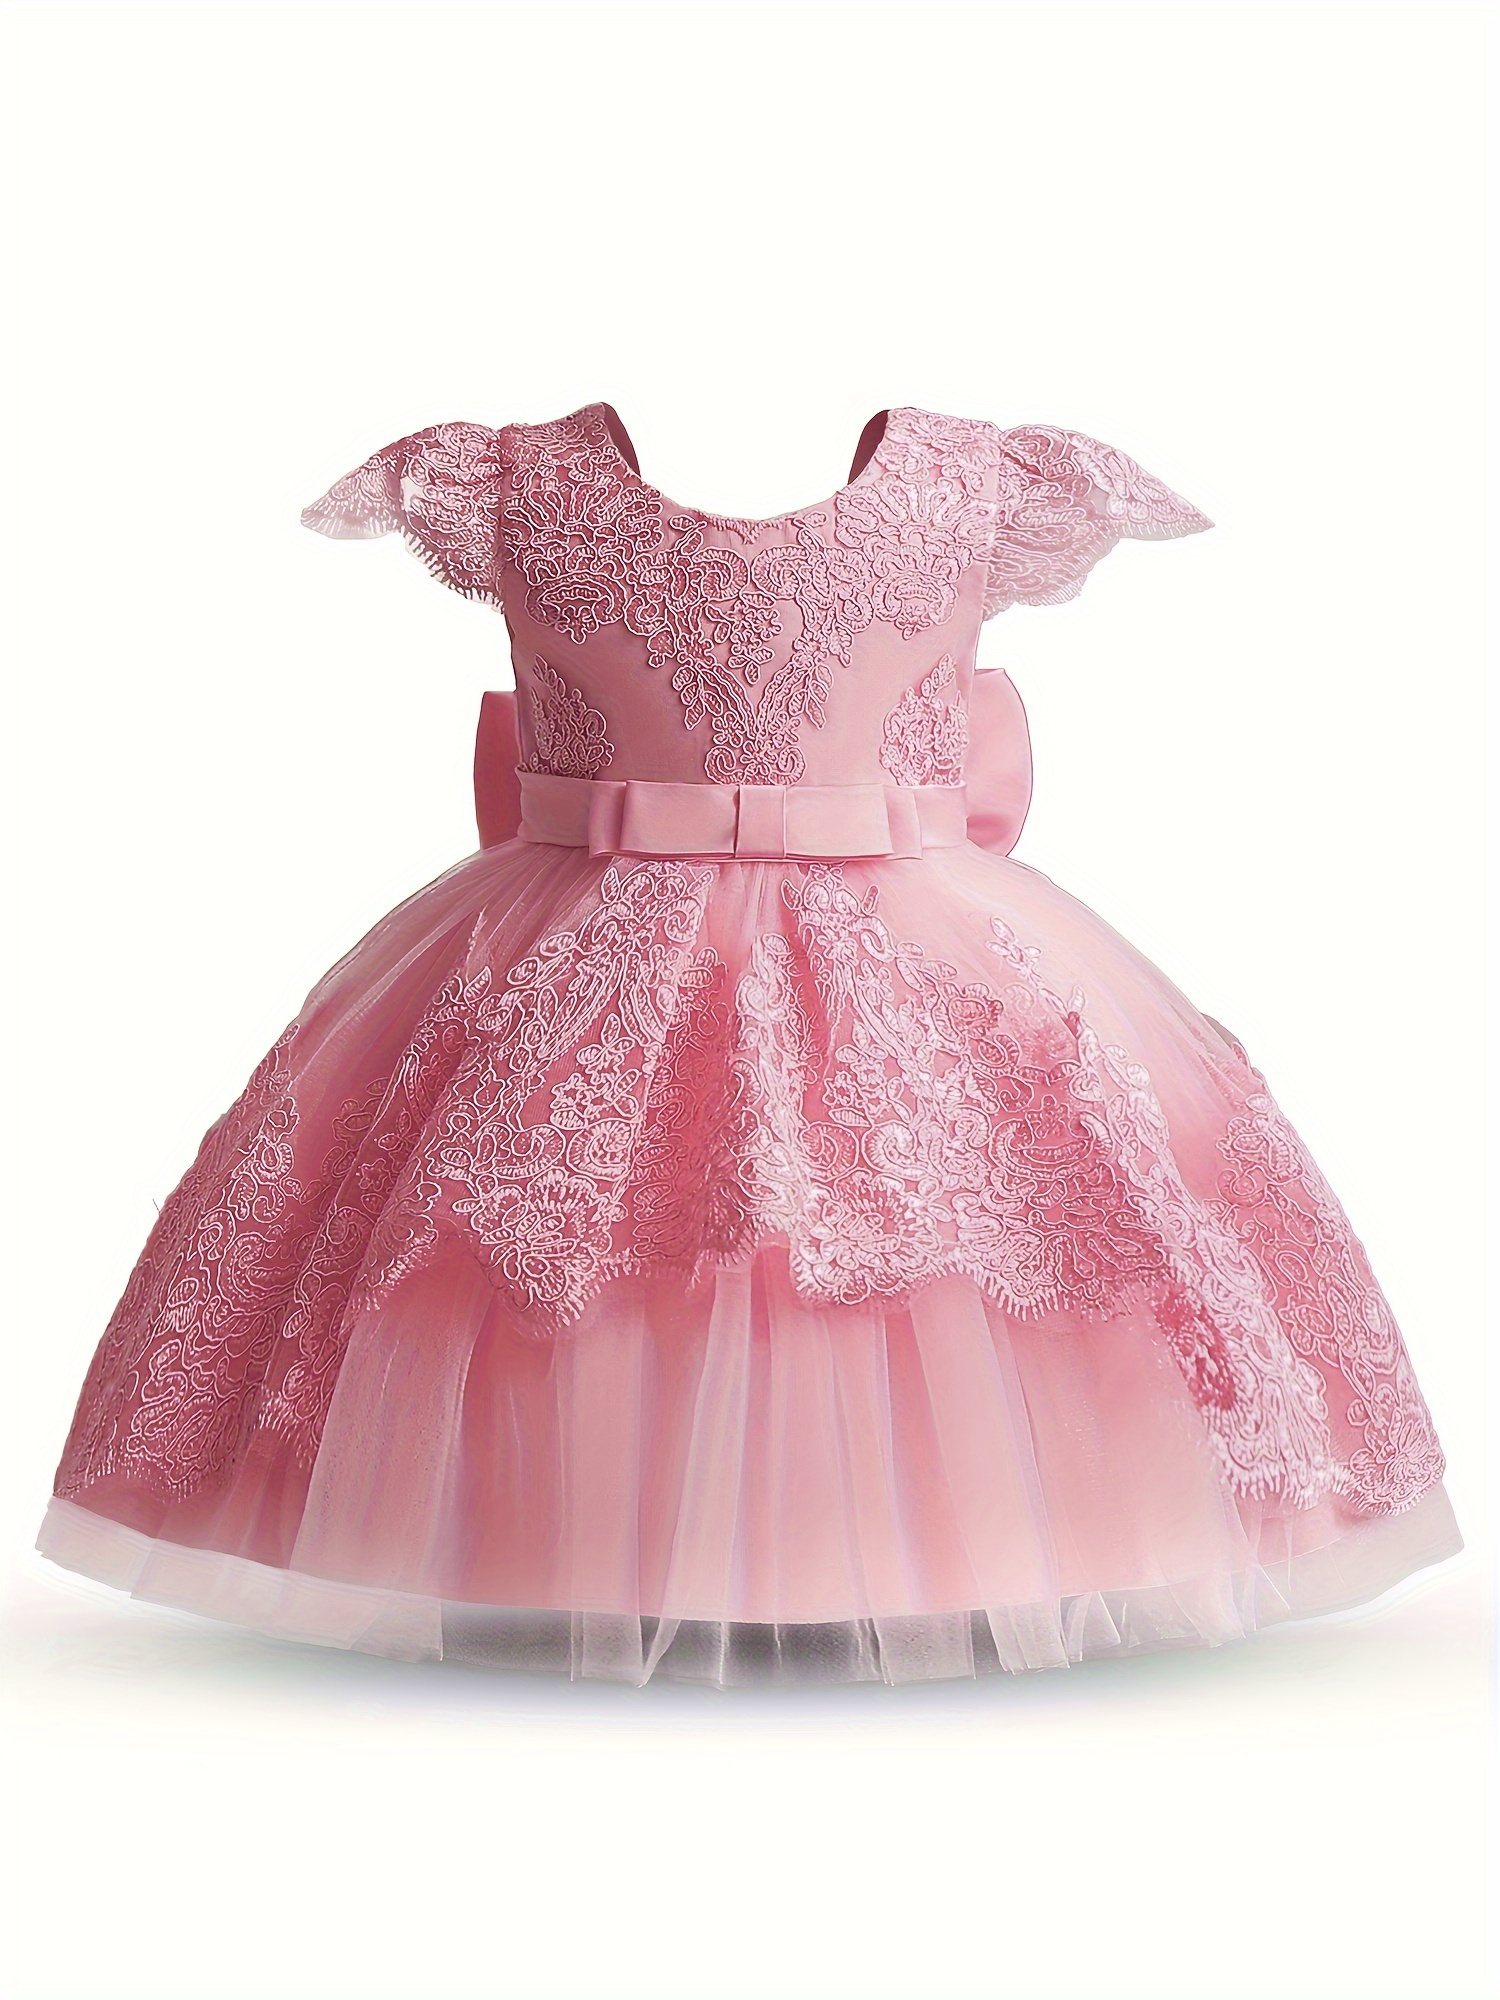 Vestido de bebé tutú rosa brillante, vestido de niña de flores, vestido de  primer cumpleaños, vestido de bebé de cumpleaños, vestido de bebé corto  hinchado, vestido de novia para bebés 